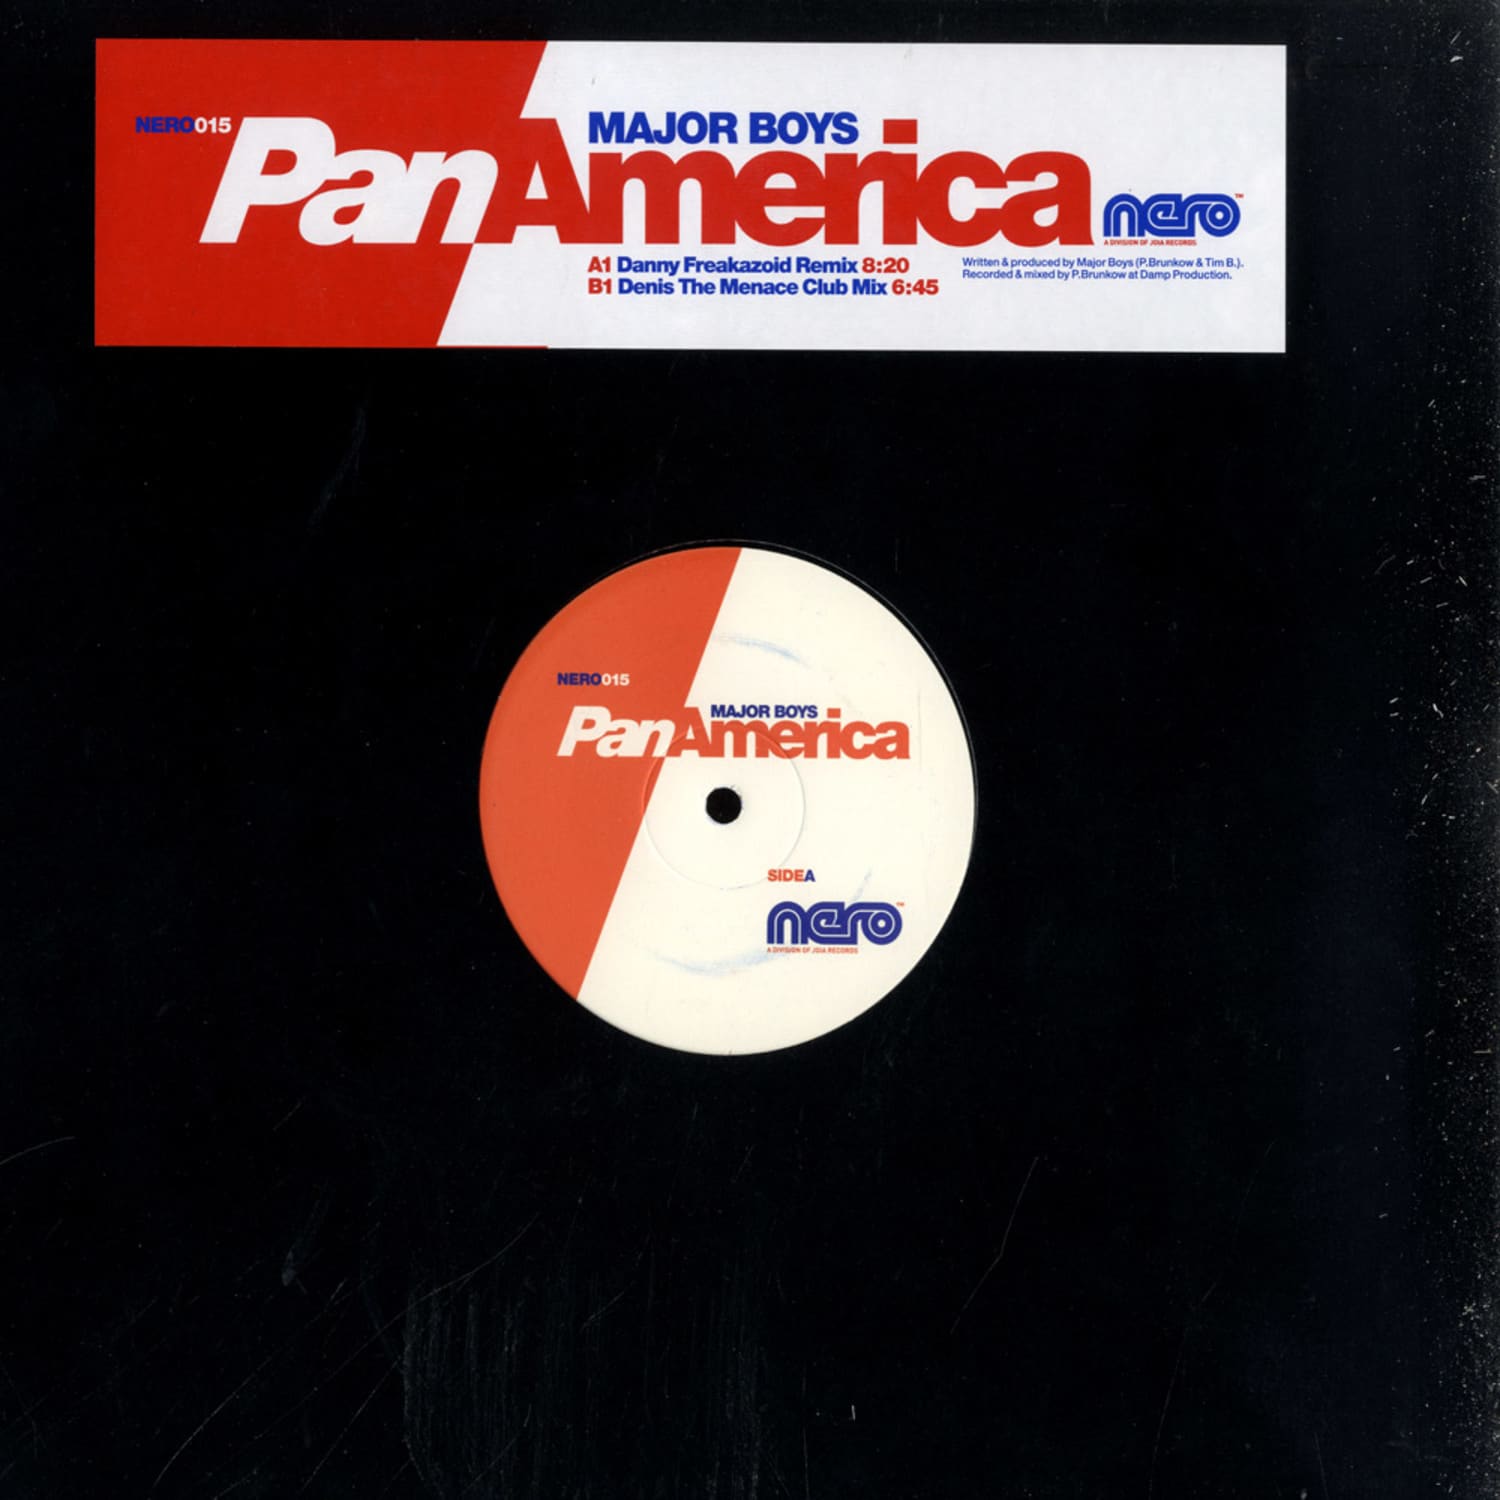 Major Boys - PAN AMERICA - 2007 MIXES